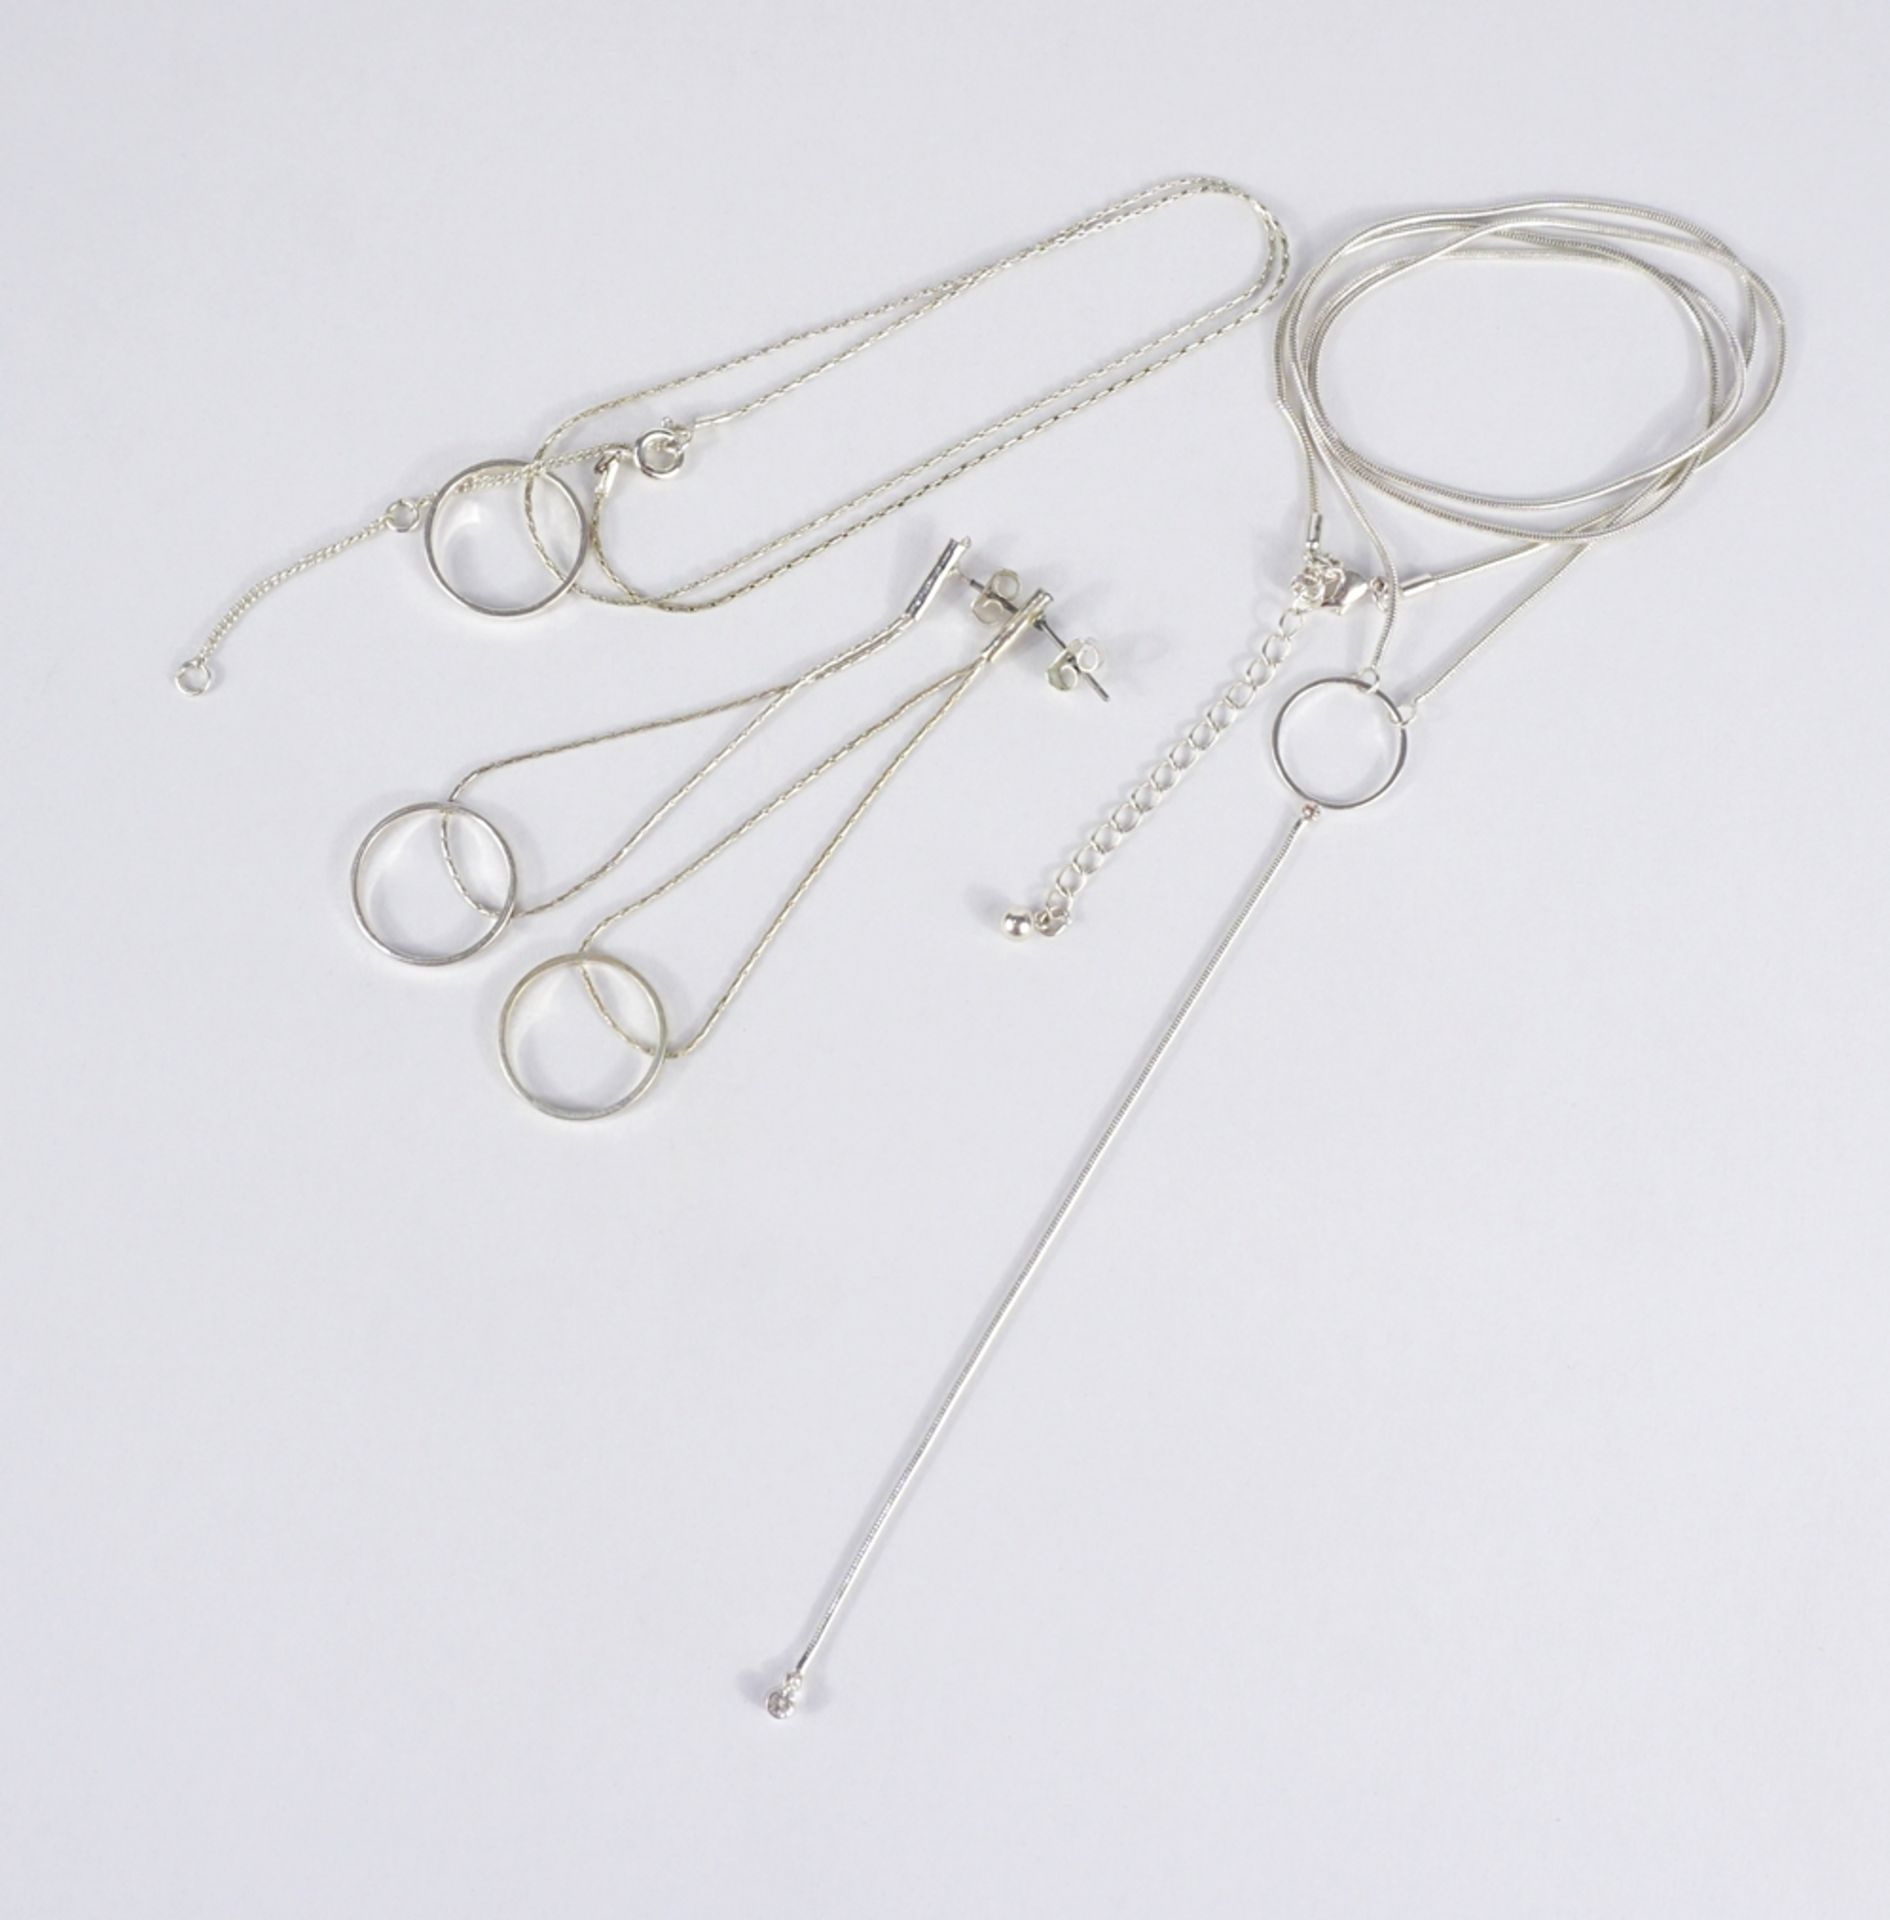 Kette mit Stabanhänger, 2 Colliers und 1 Paar Ohrringe, versilbert - Bild 3 aus 5